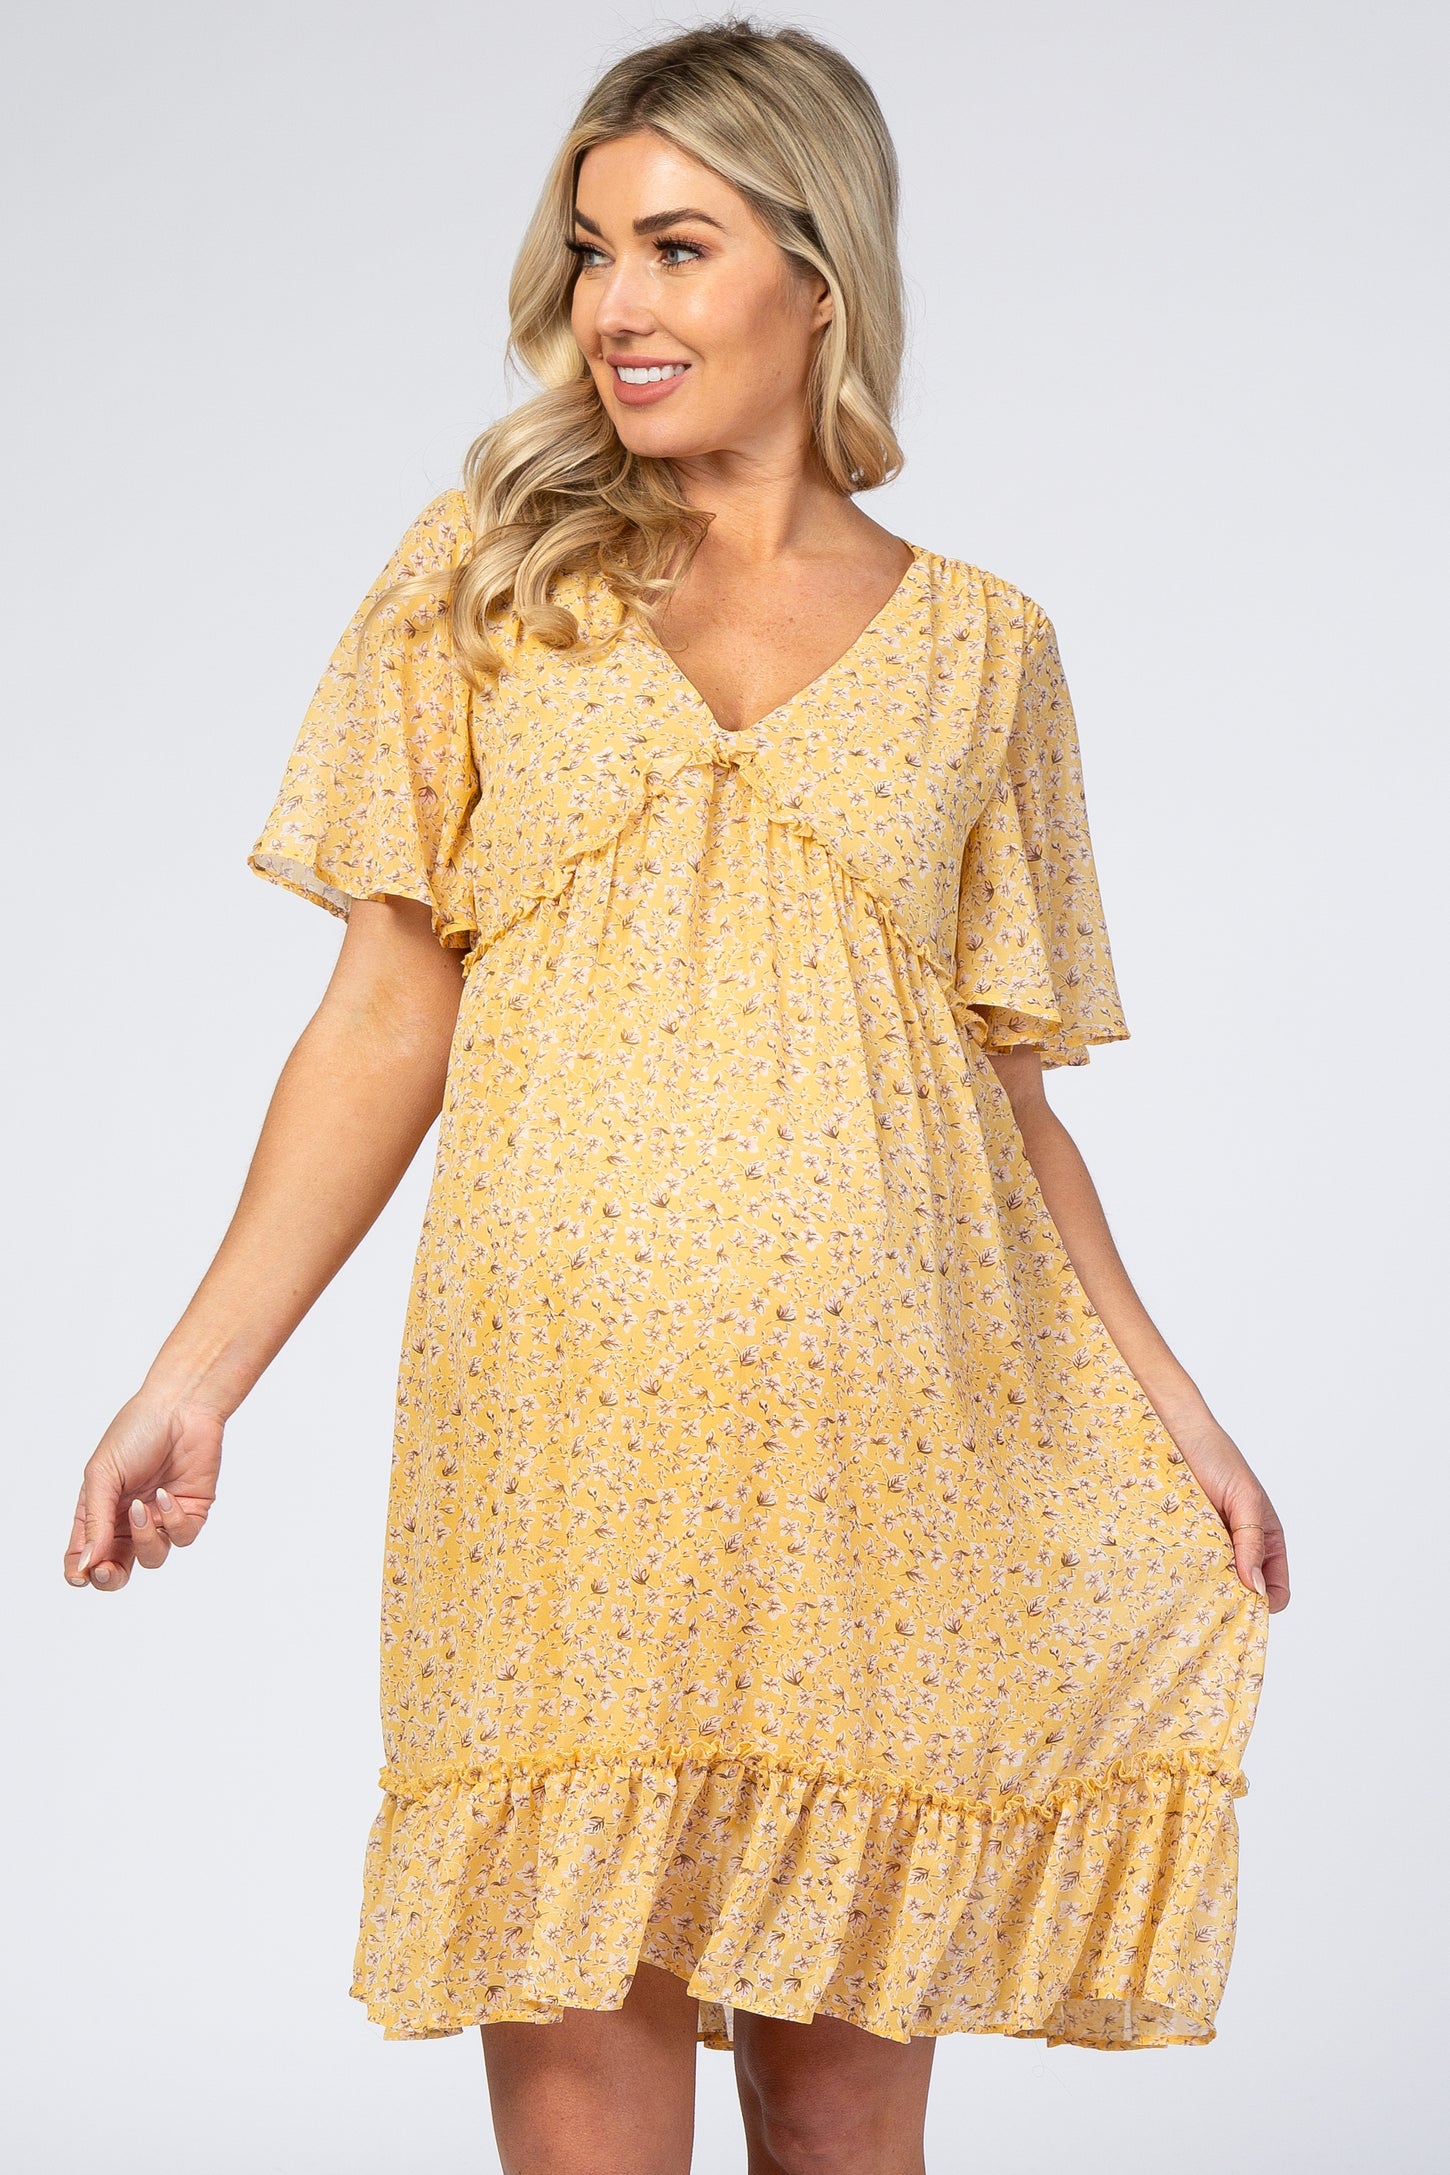 Yellow Floral Chiffon Ruffle Maternity Dress